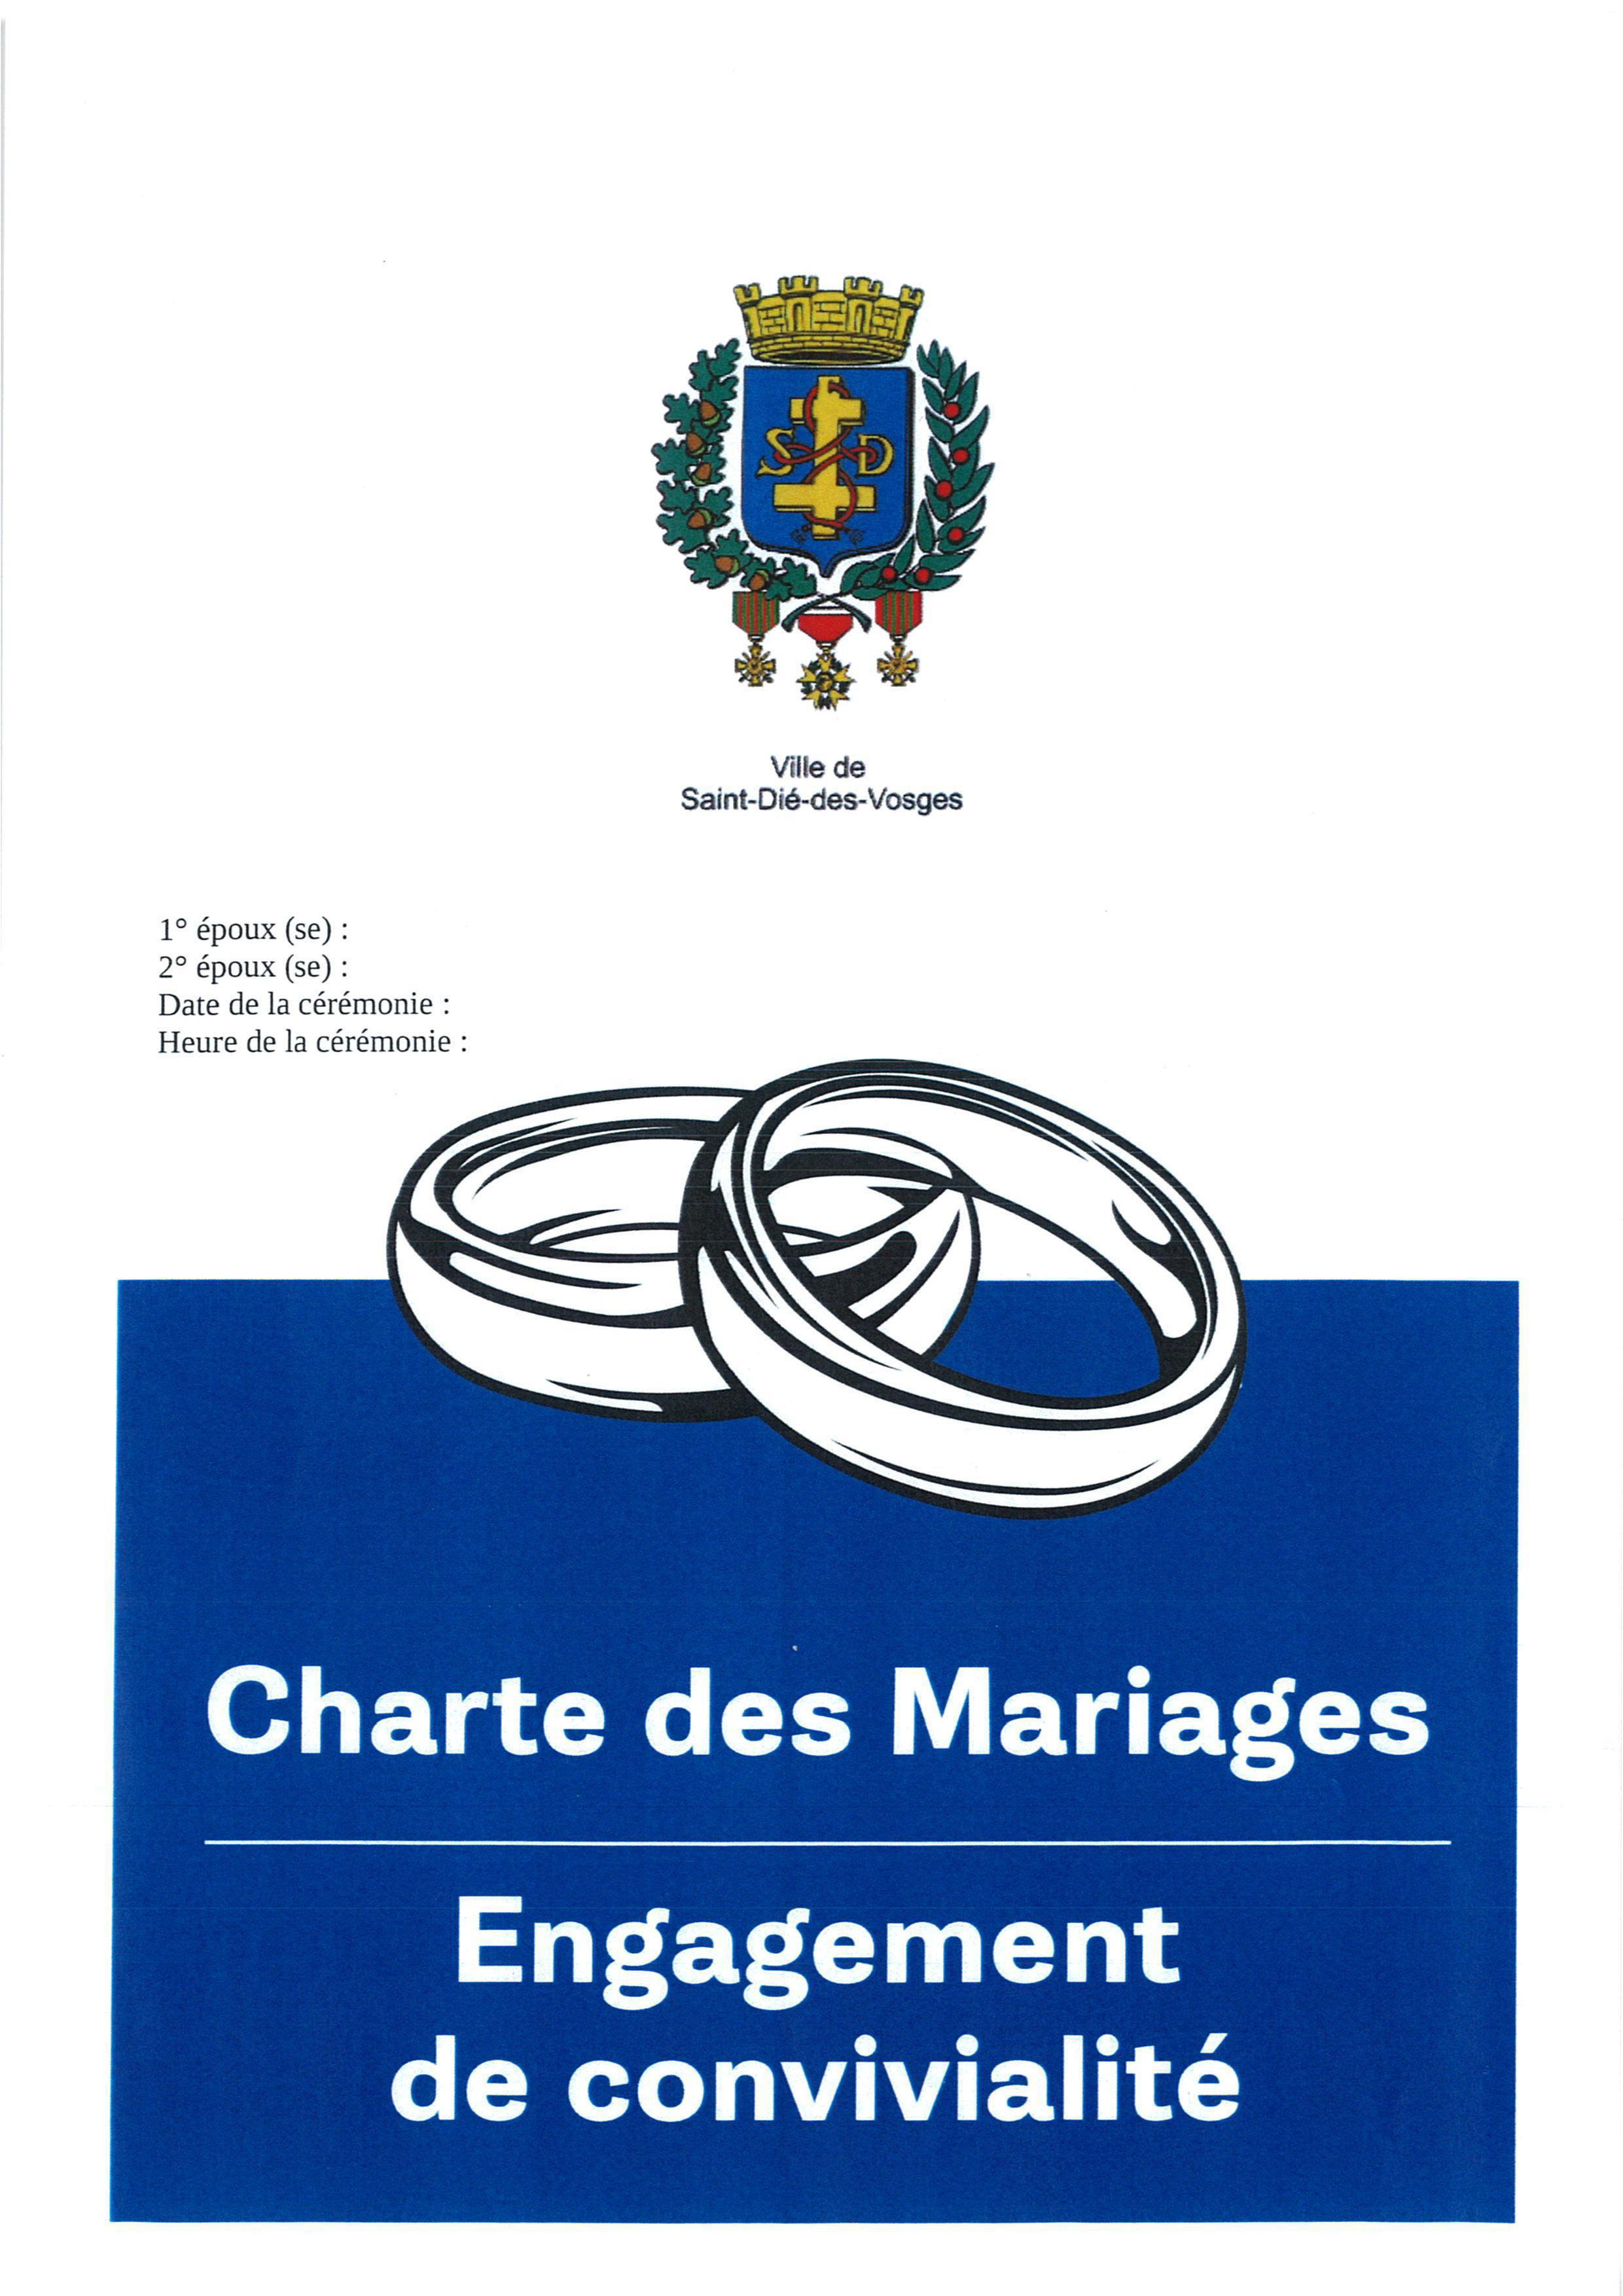 Charte des mariages Engagement de convivialite 2022